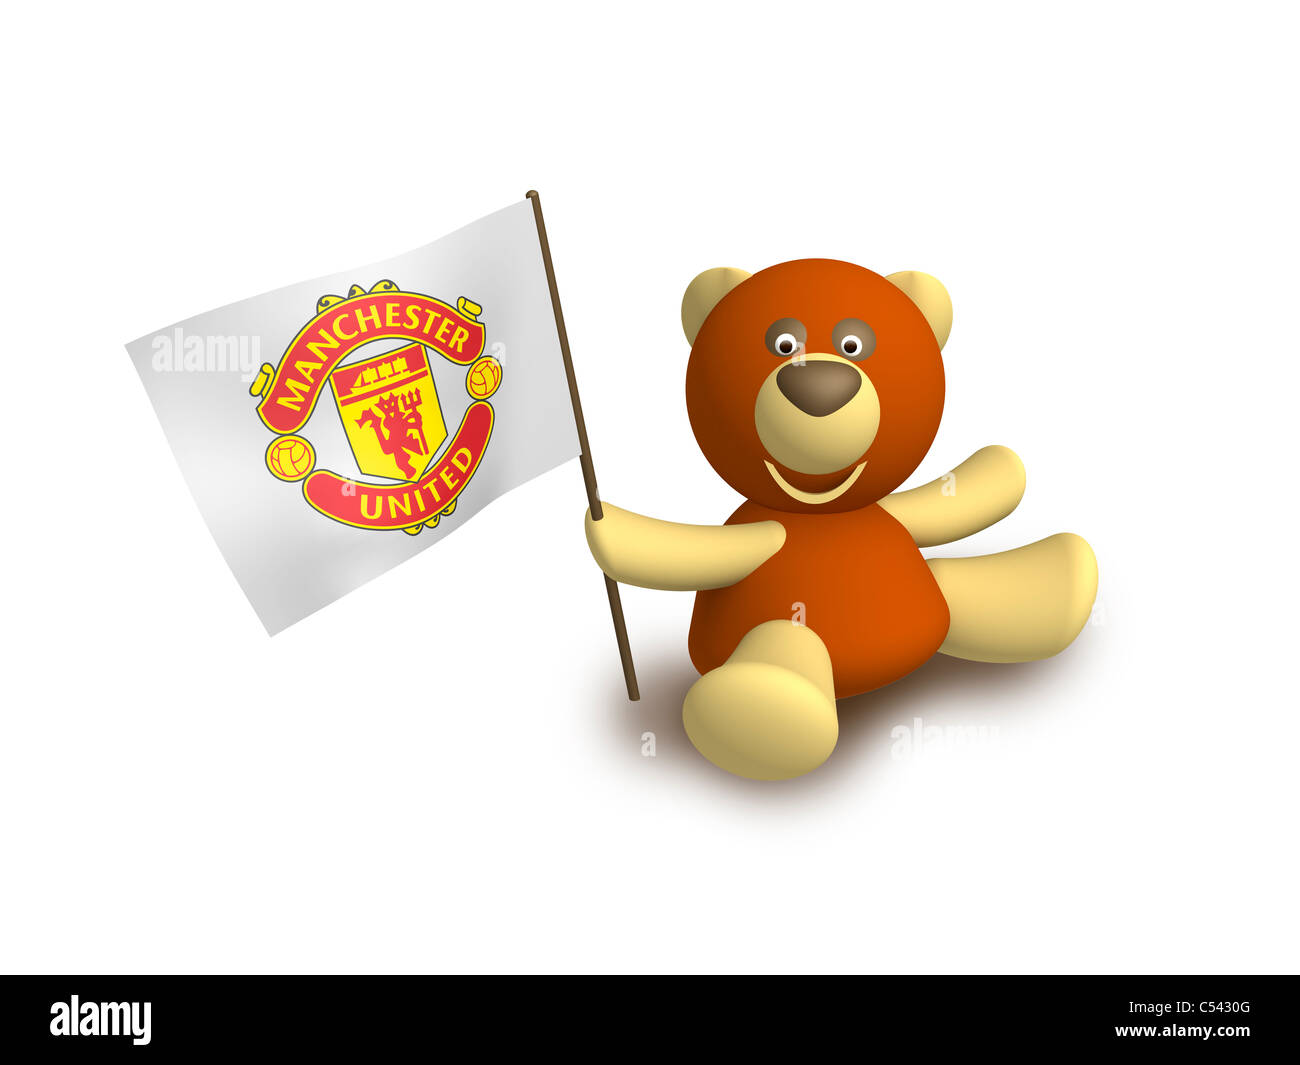 Manchester United flag logo symbol icon Stock Photo - Alamy